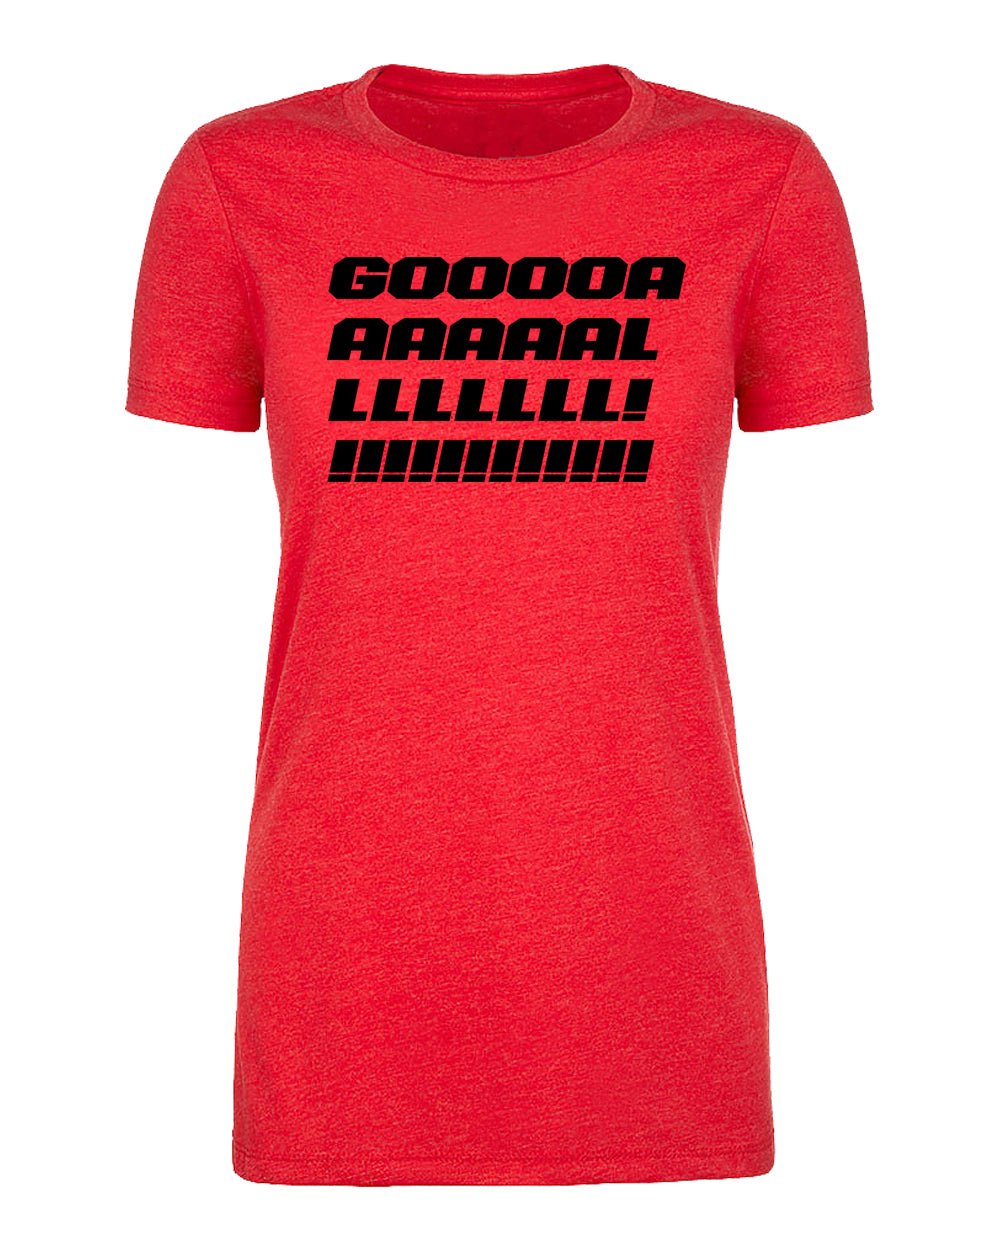 Gooooaaal! Womens Soccer T Shirts - Mato & Hash